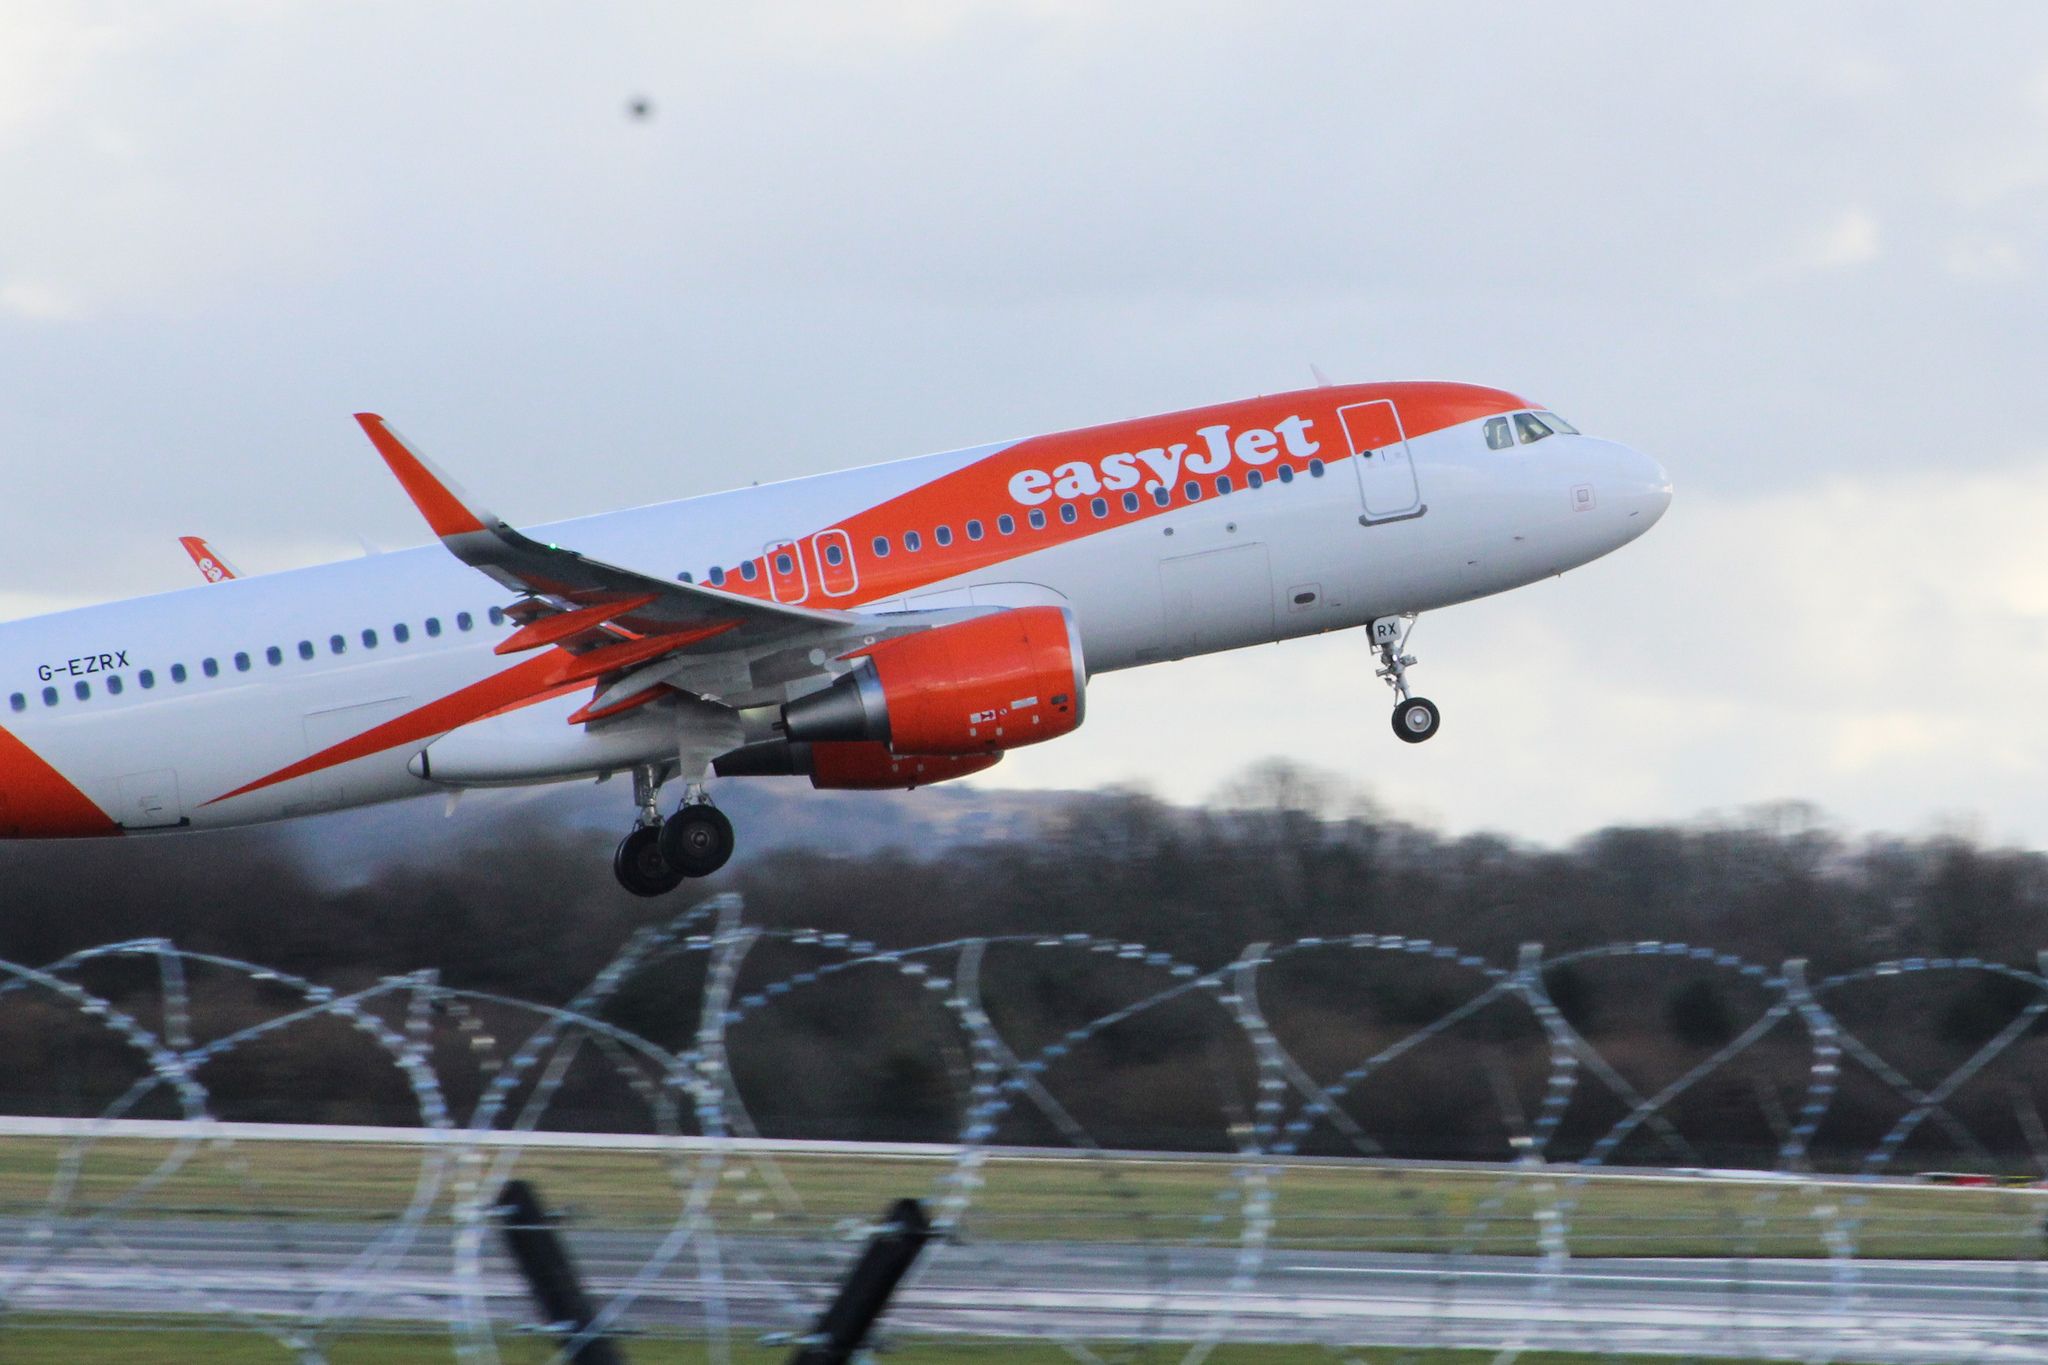 Un avión de easyJet despega del aeropuerto de Manchester. FOTO: Alison Wheatley (flickr.com)